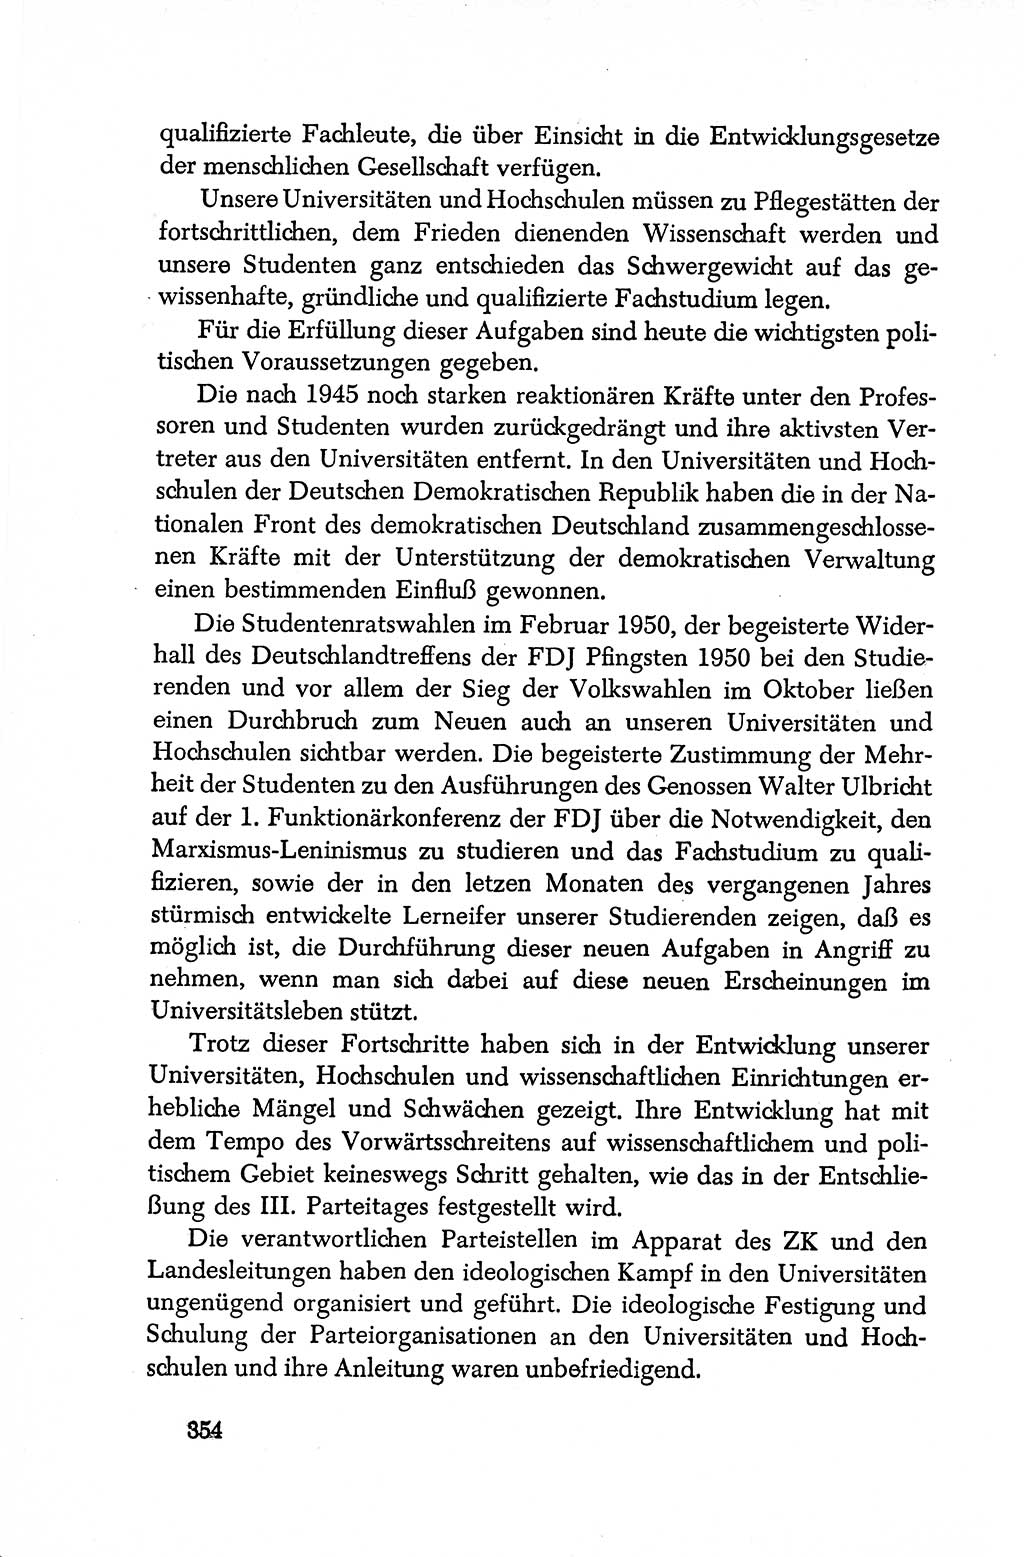 Dokumente der Sozialistischen Einheitspartei Deutschlands (SED) [Deutsche Demokratische Republik (DDR)] 1950-1952, Seite 354 (Dok. SED DDR 1950-1952, S. 354)